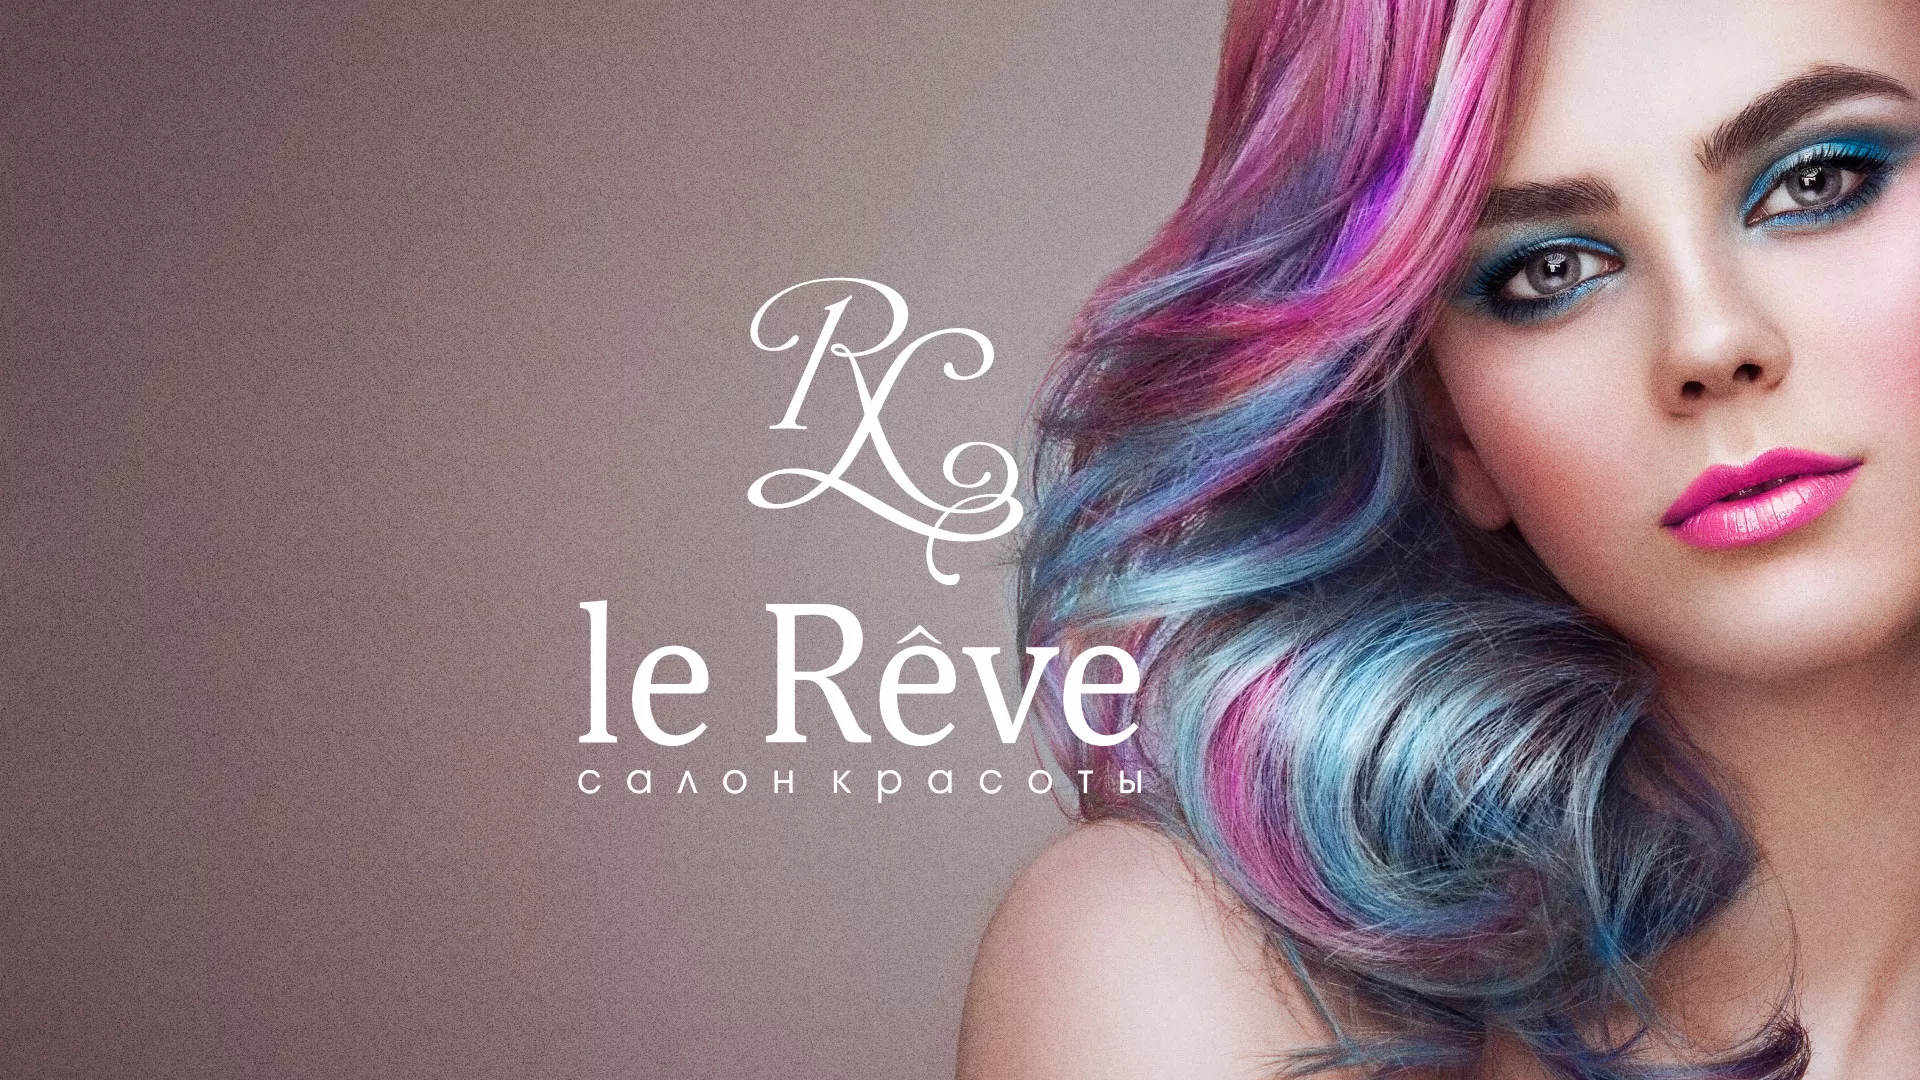 Создание сайта для салона красоты «Le Reve» в Охе